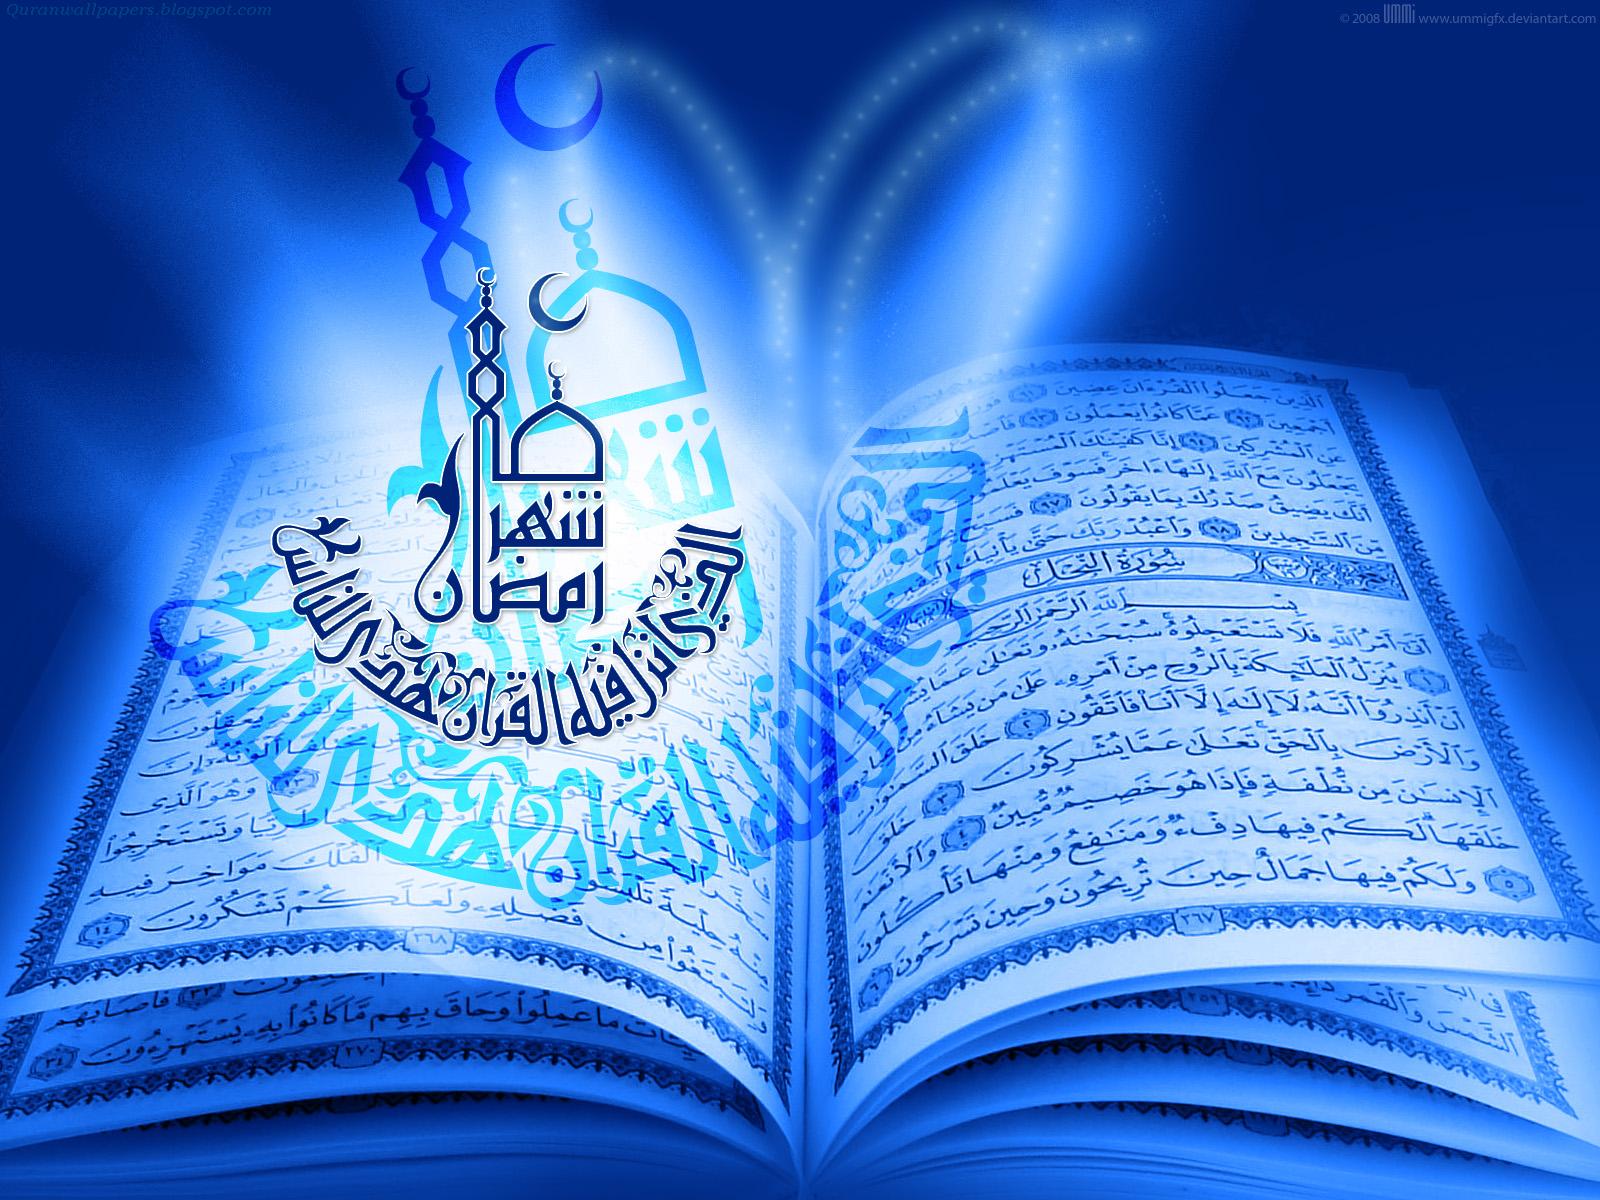 RAMADAN 2012 WALLPAPERS SET 1 Quran Islam Wazaif Ayat Hadees